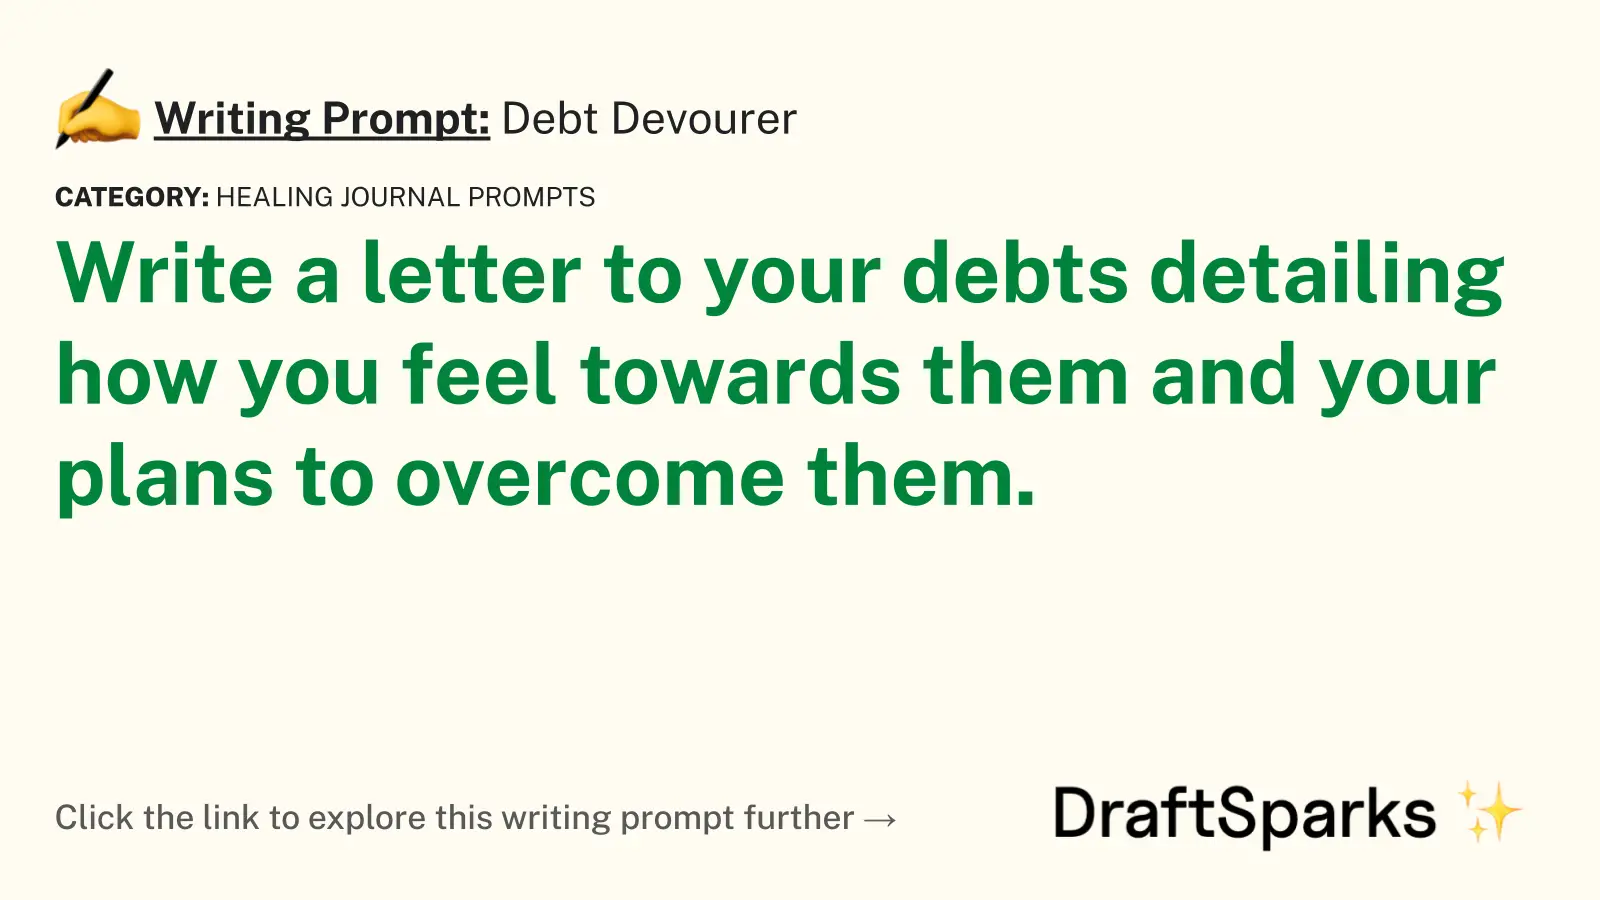 Debt Devourer